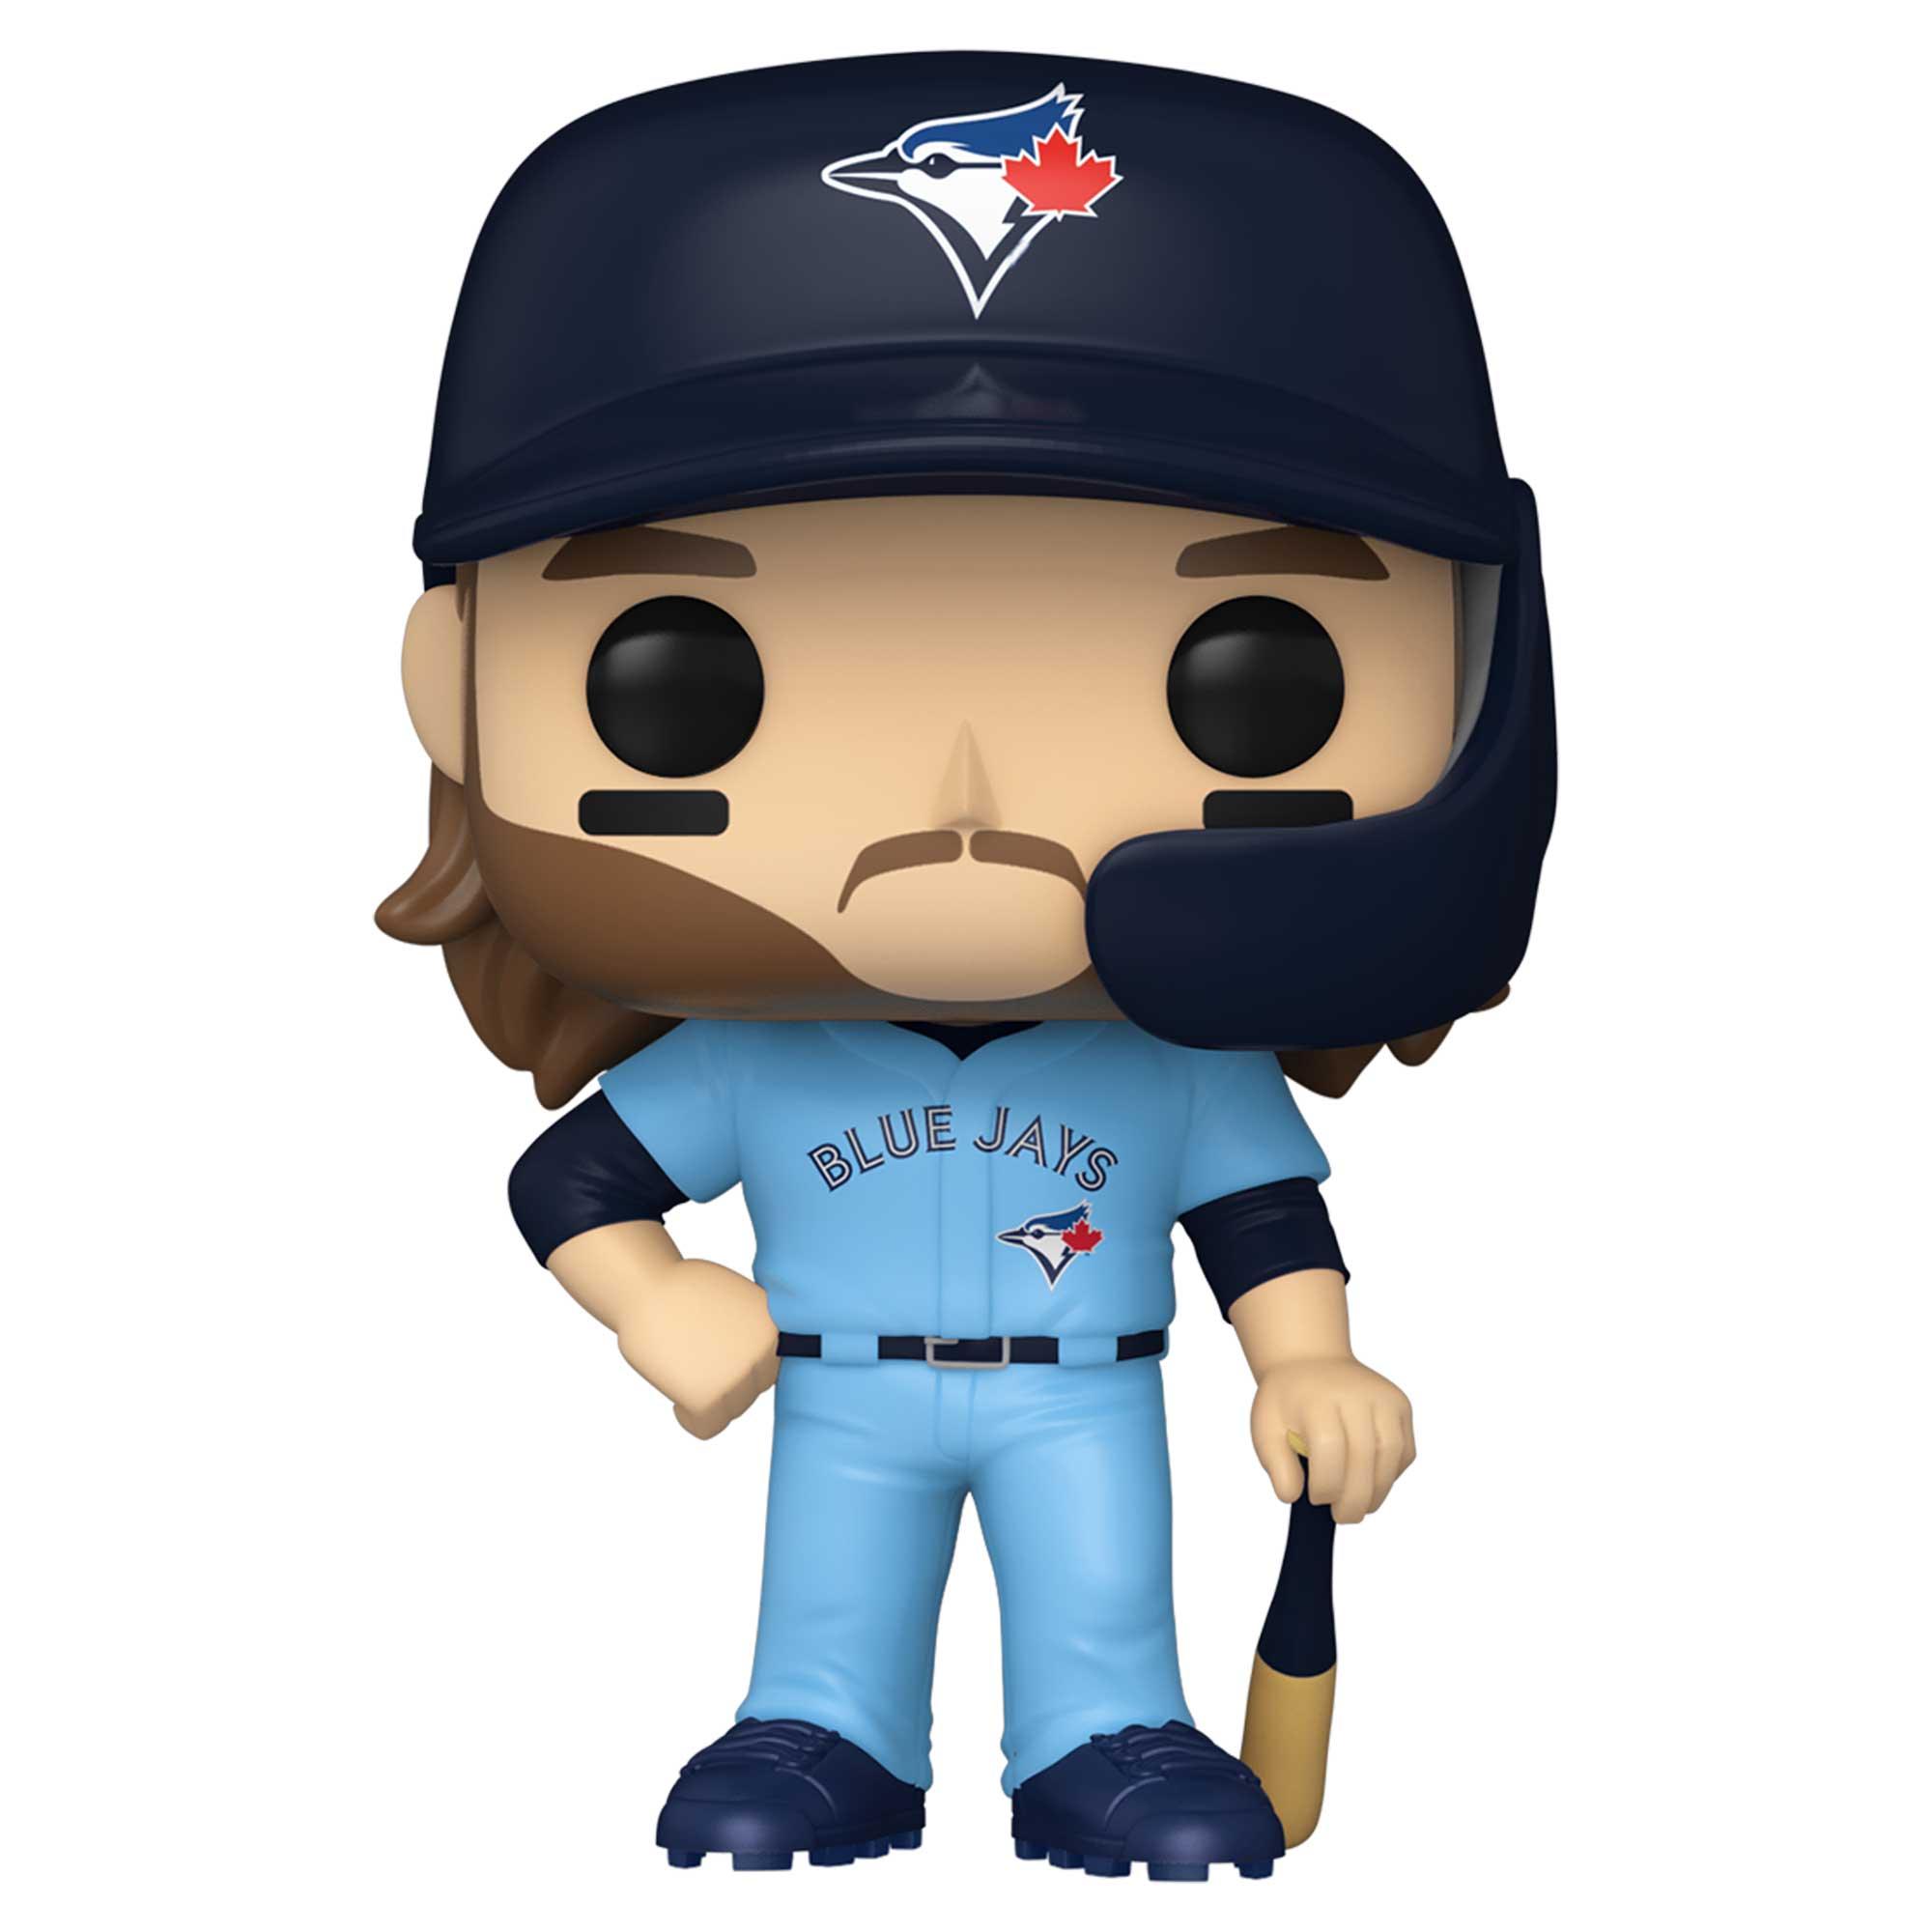 Pop! MLB - Baseball - Toronto Blue Jays - Bo Bichette - #75 - Hobby Champion Inc